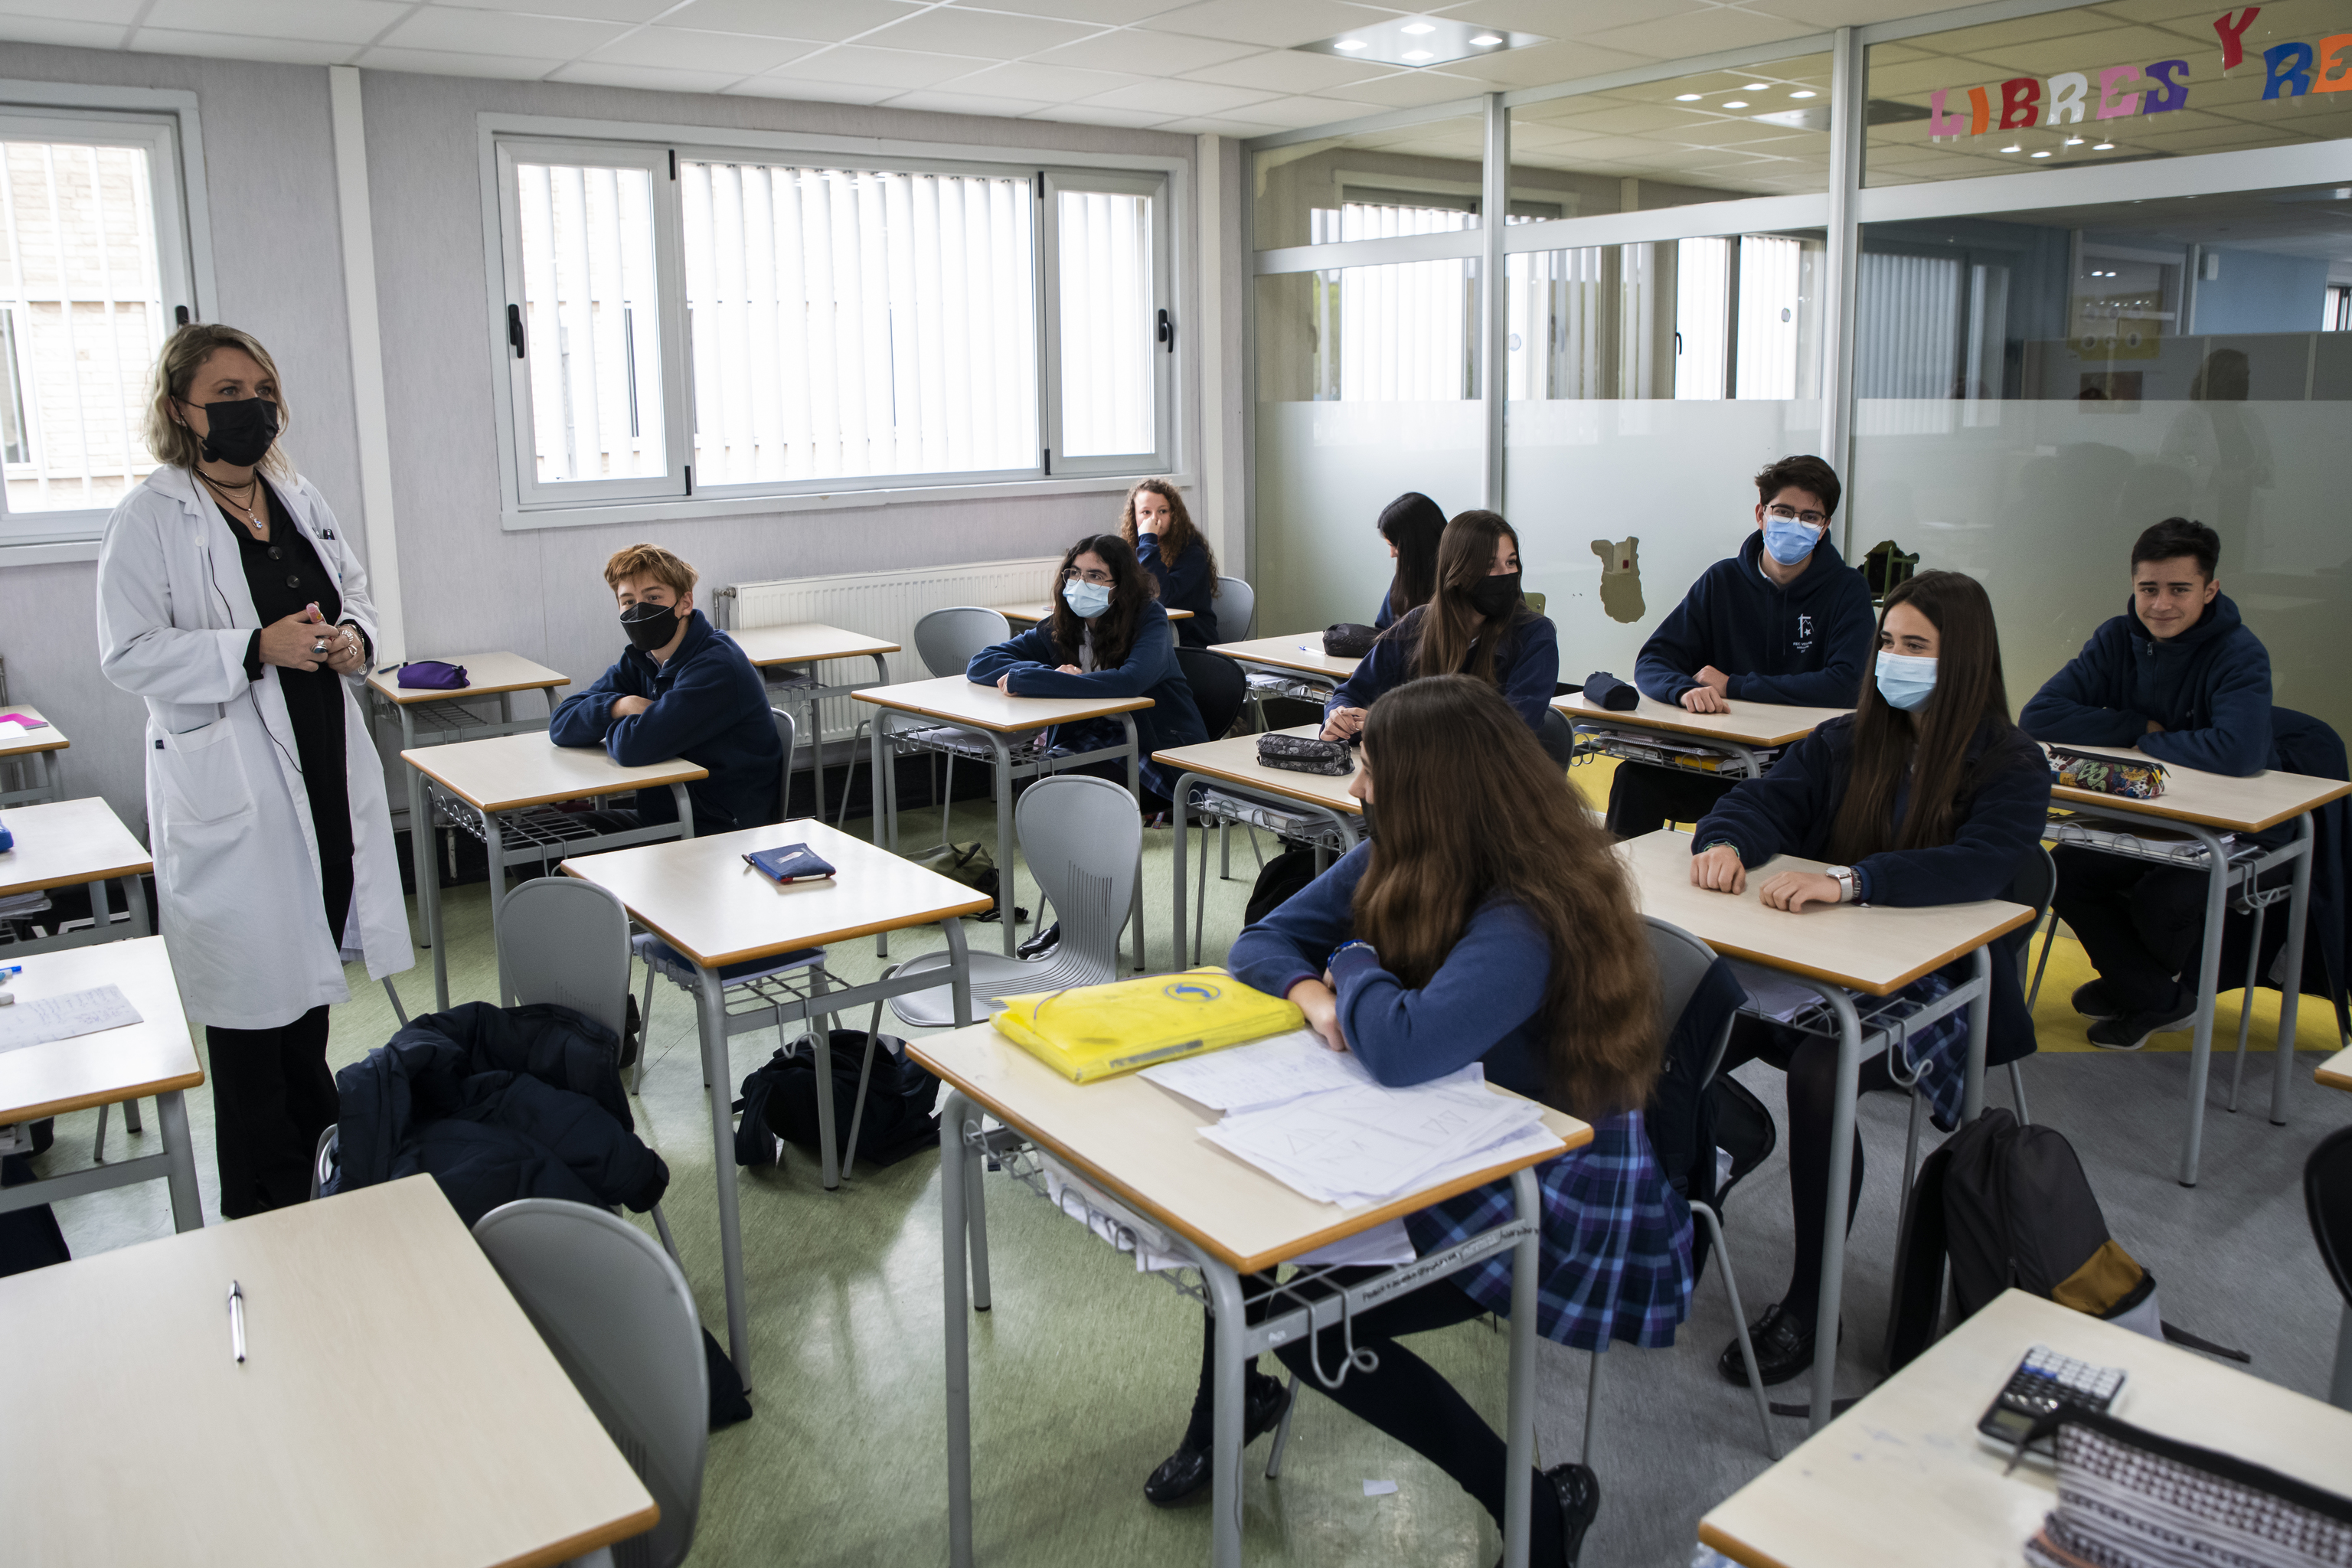 Les élèves de l'école Santa Joaquina de Vedruna à Madrid avec des masques malgré le fait qu'ils ne soient pas obligatoires.